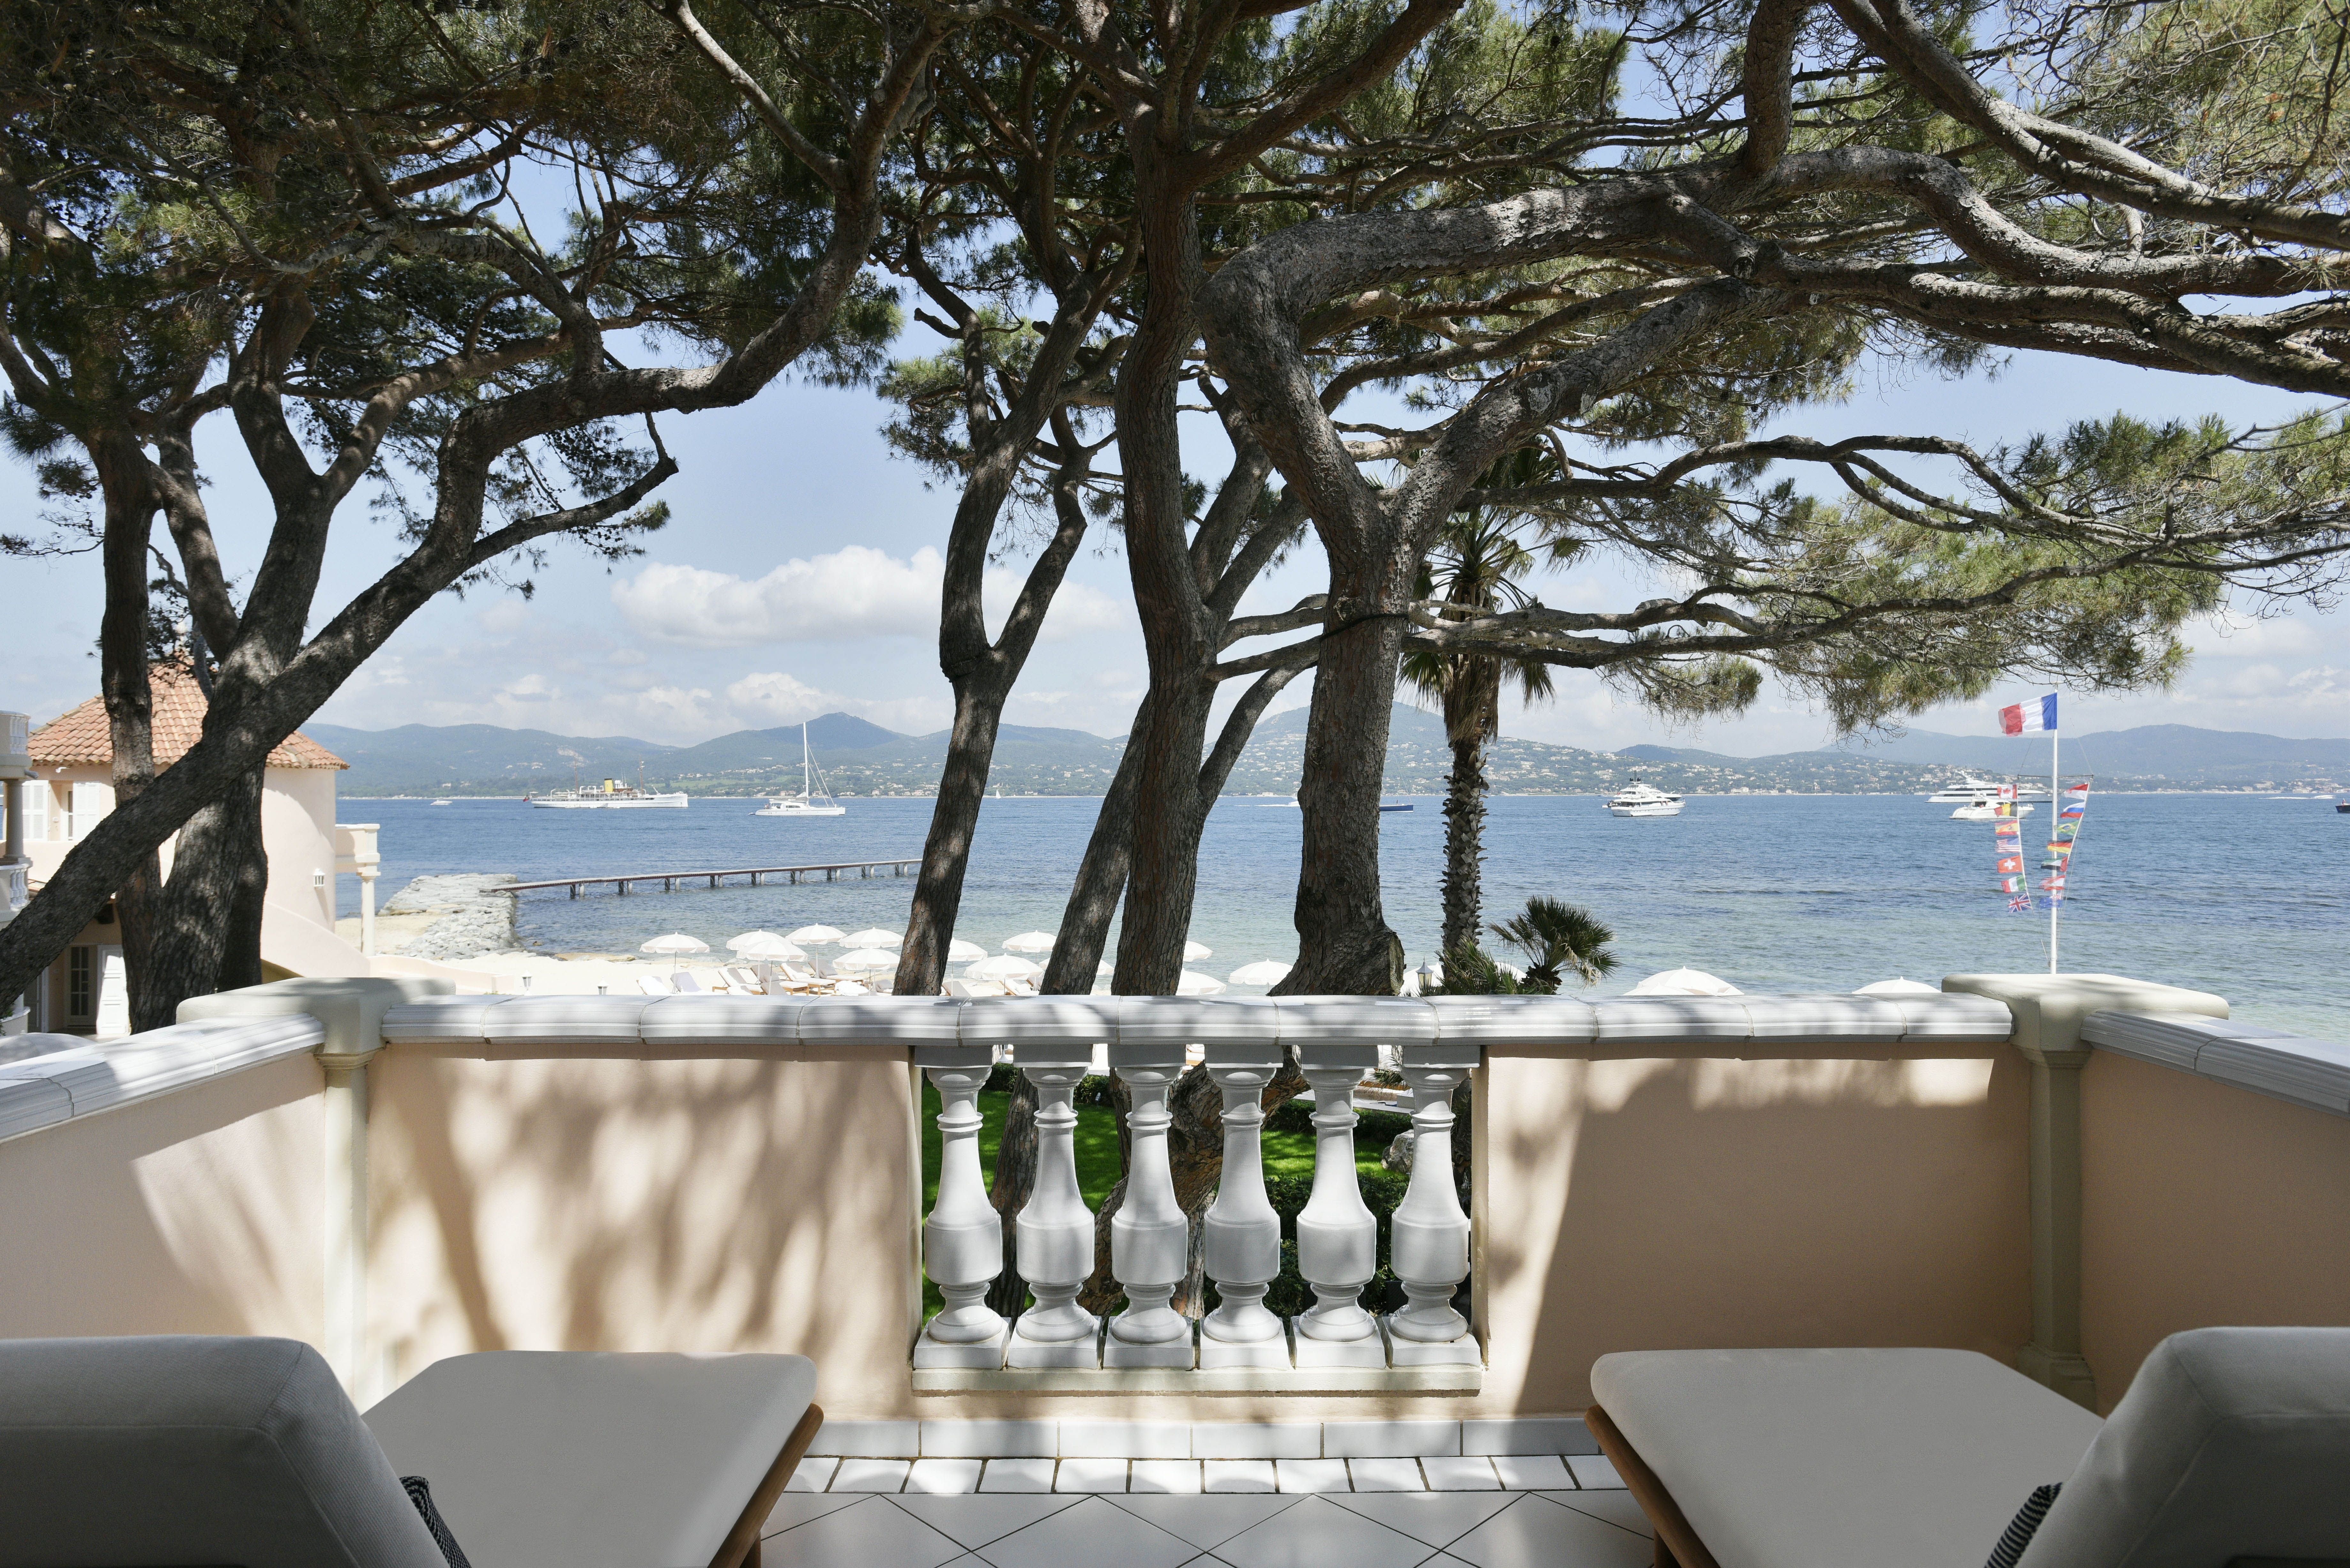 LV By The Pool : L'hôtel Cheval Blanc Saint-Tropez métamorphose sa piscine  avec Louis Vuitton – Chic Riviera